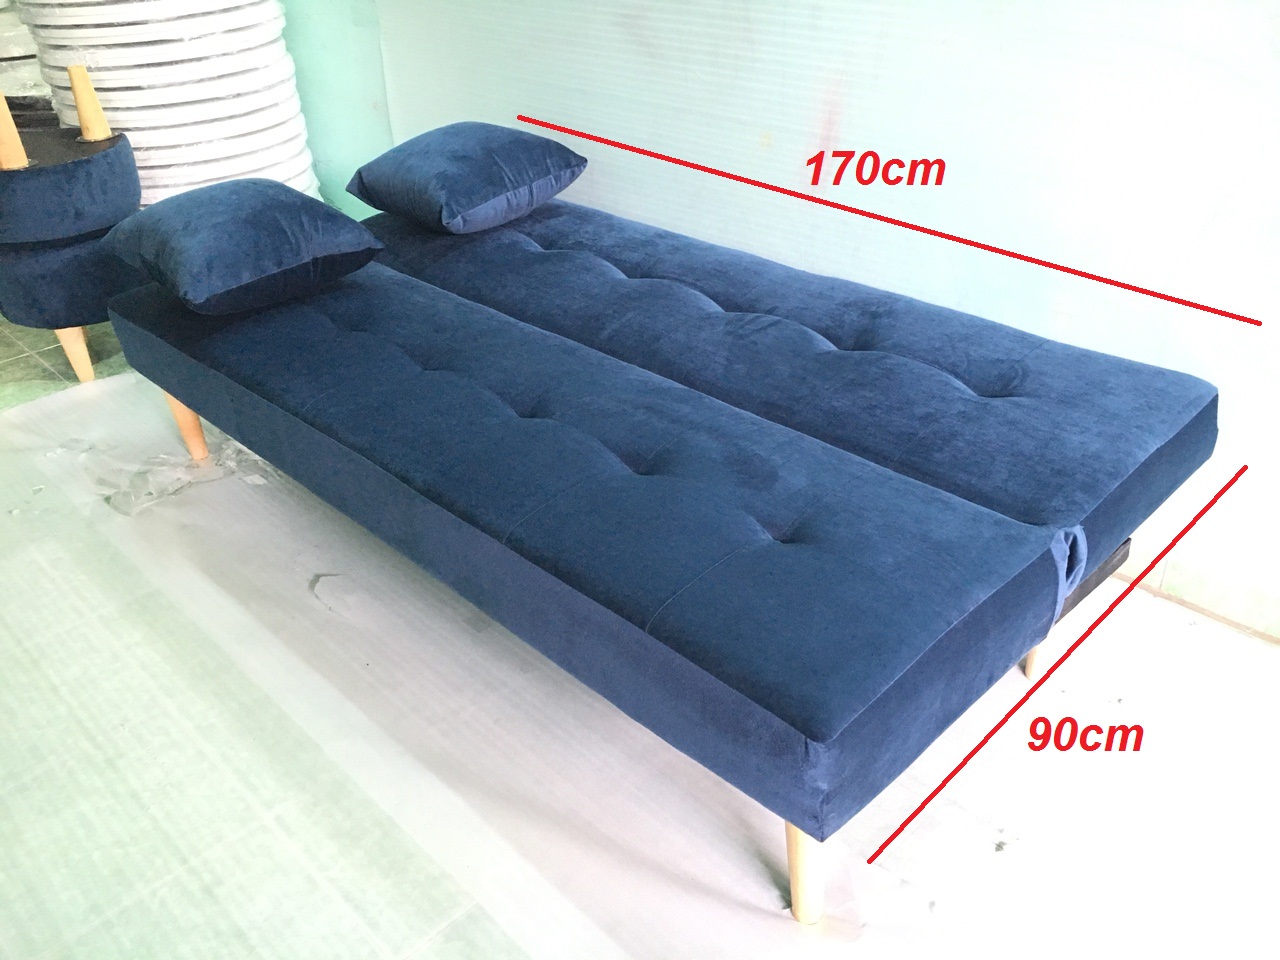 Bộ set sofa bed xanh dương đậm nhung Gvs2DvsB XDDN, sofa giường phòng khách